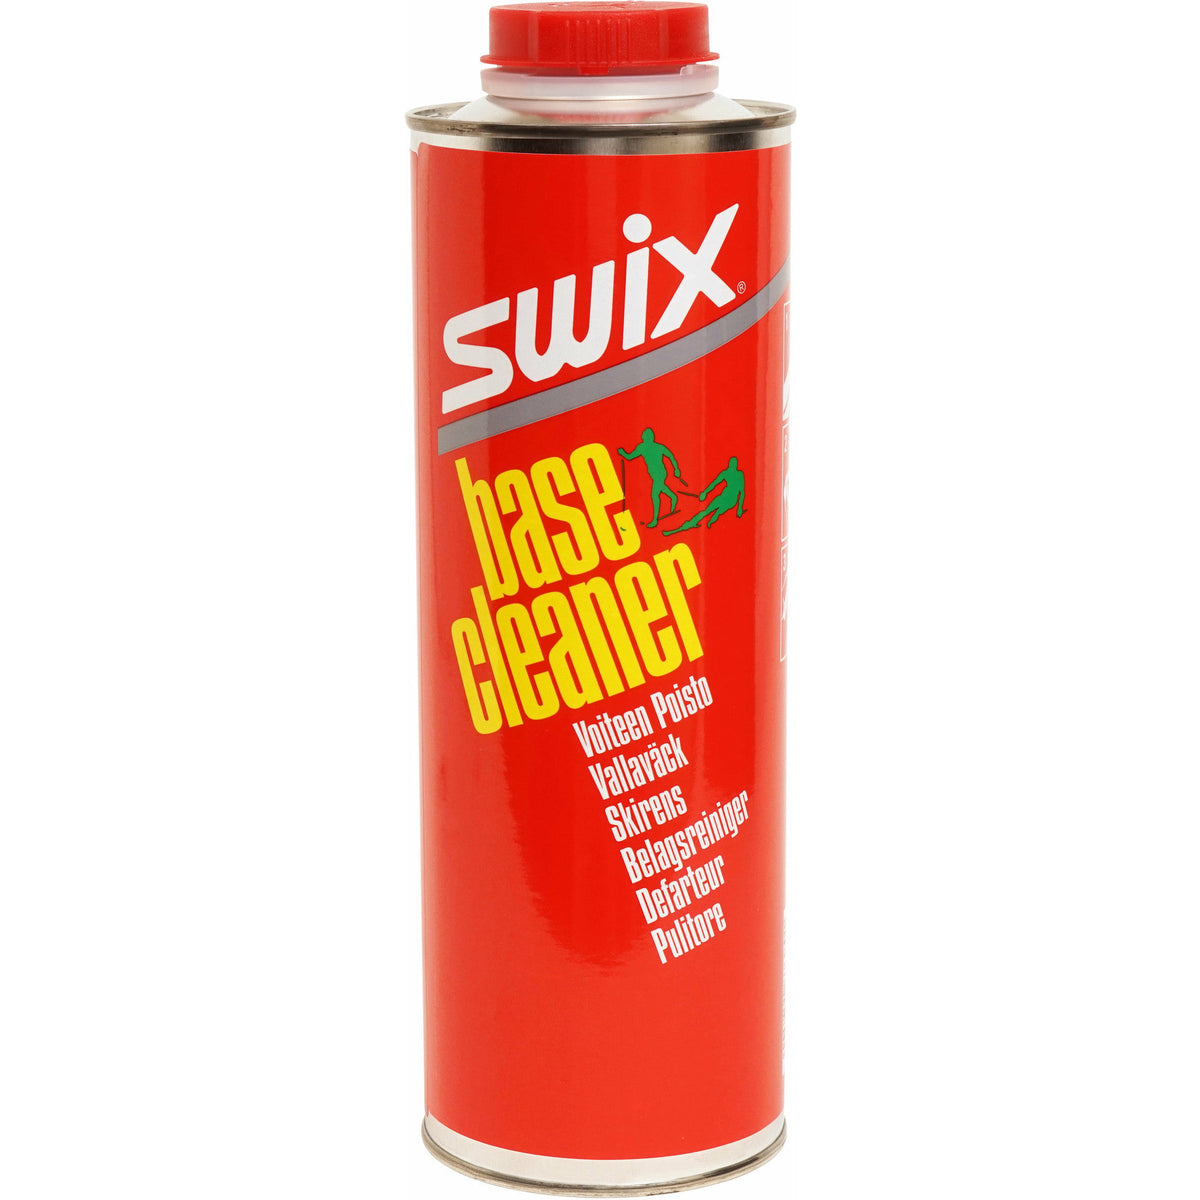 Swix Base Cleaner 1000ml